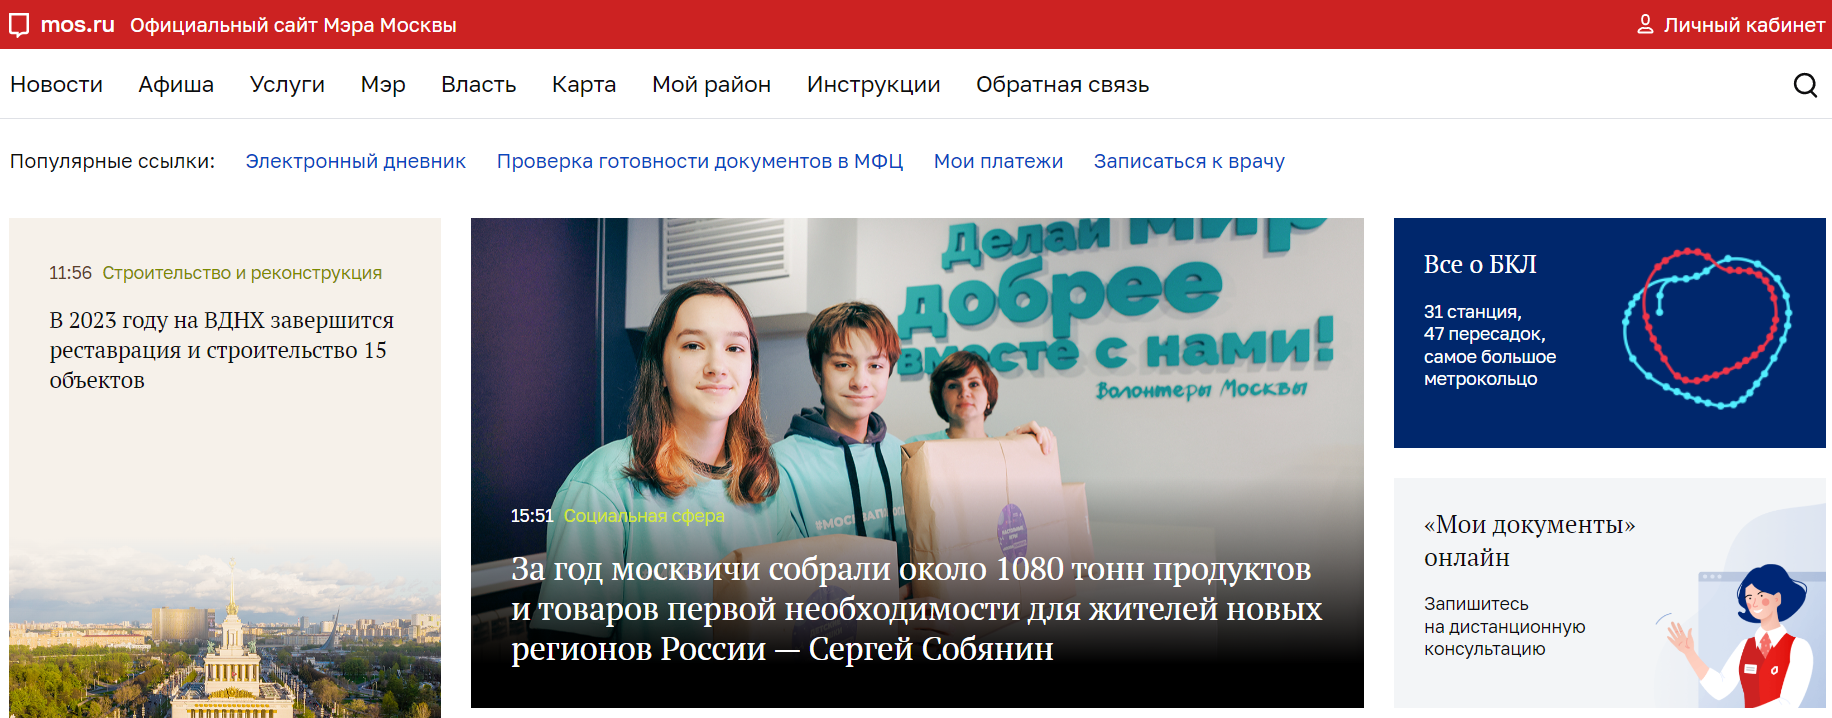 Мос.ру официальный сайт Мэра Москвы